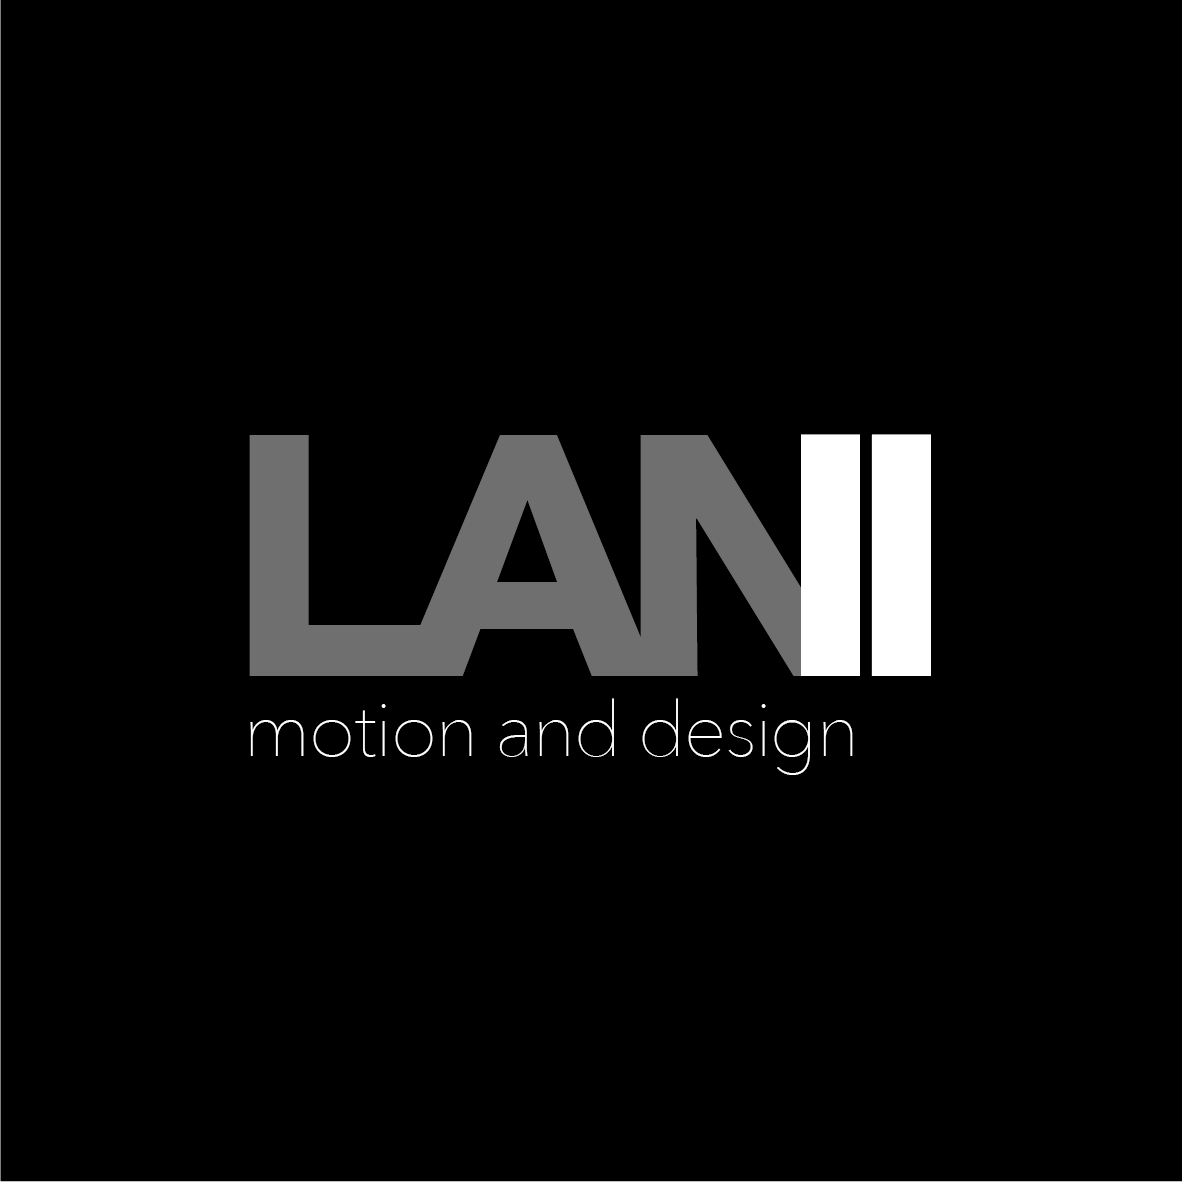 LANI design